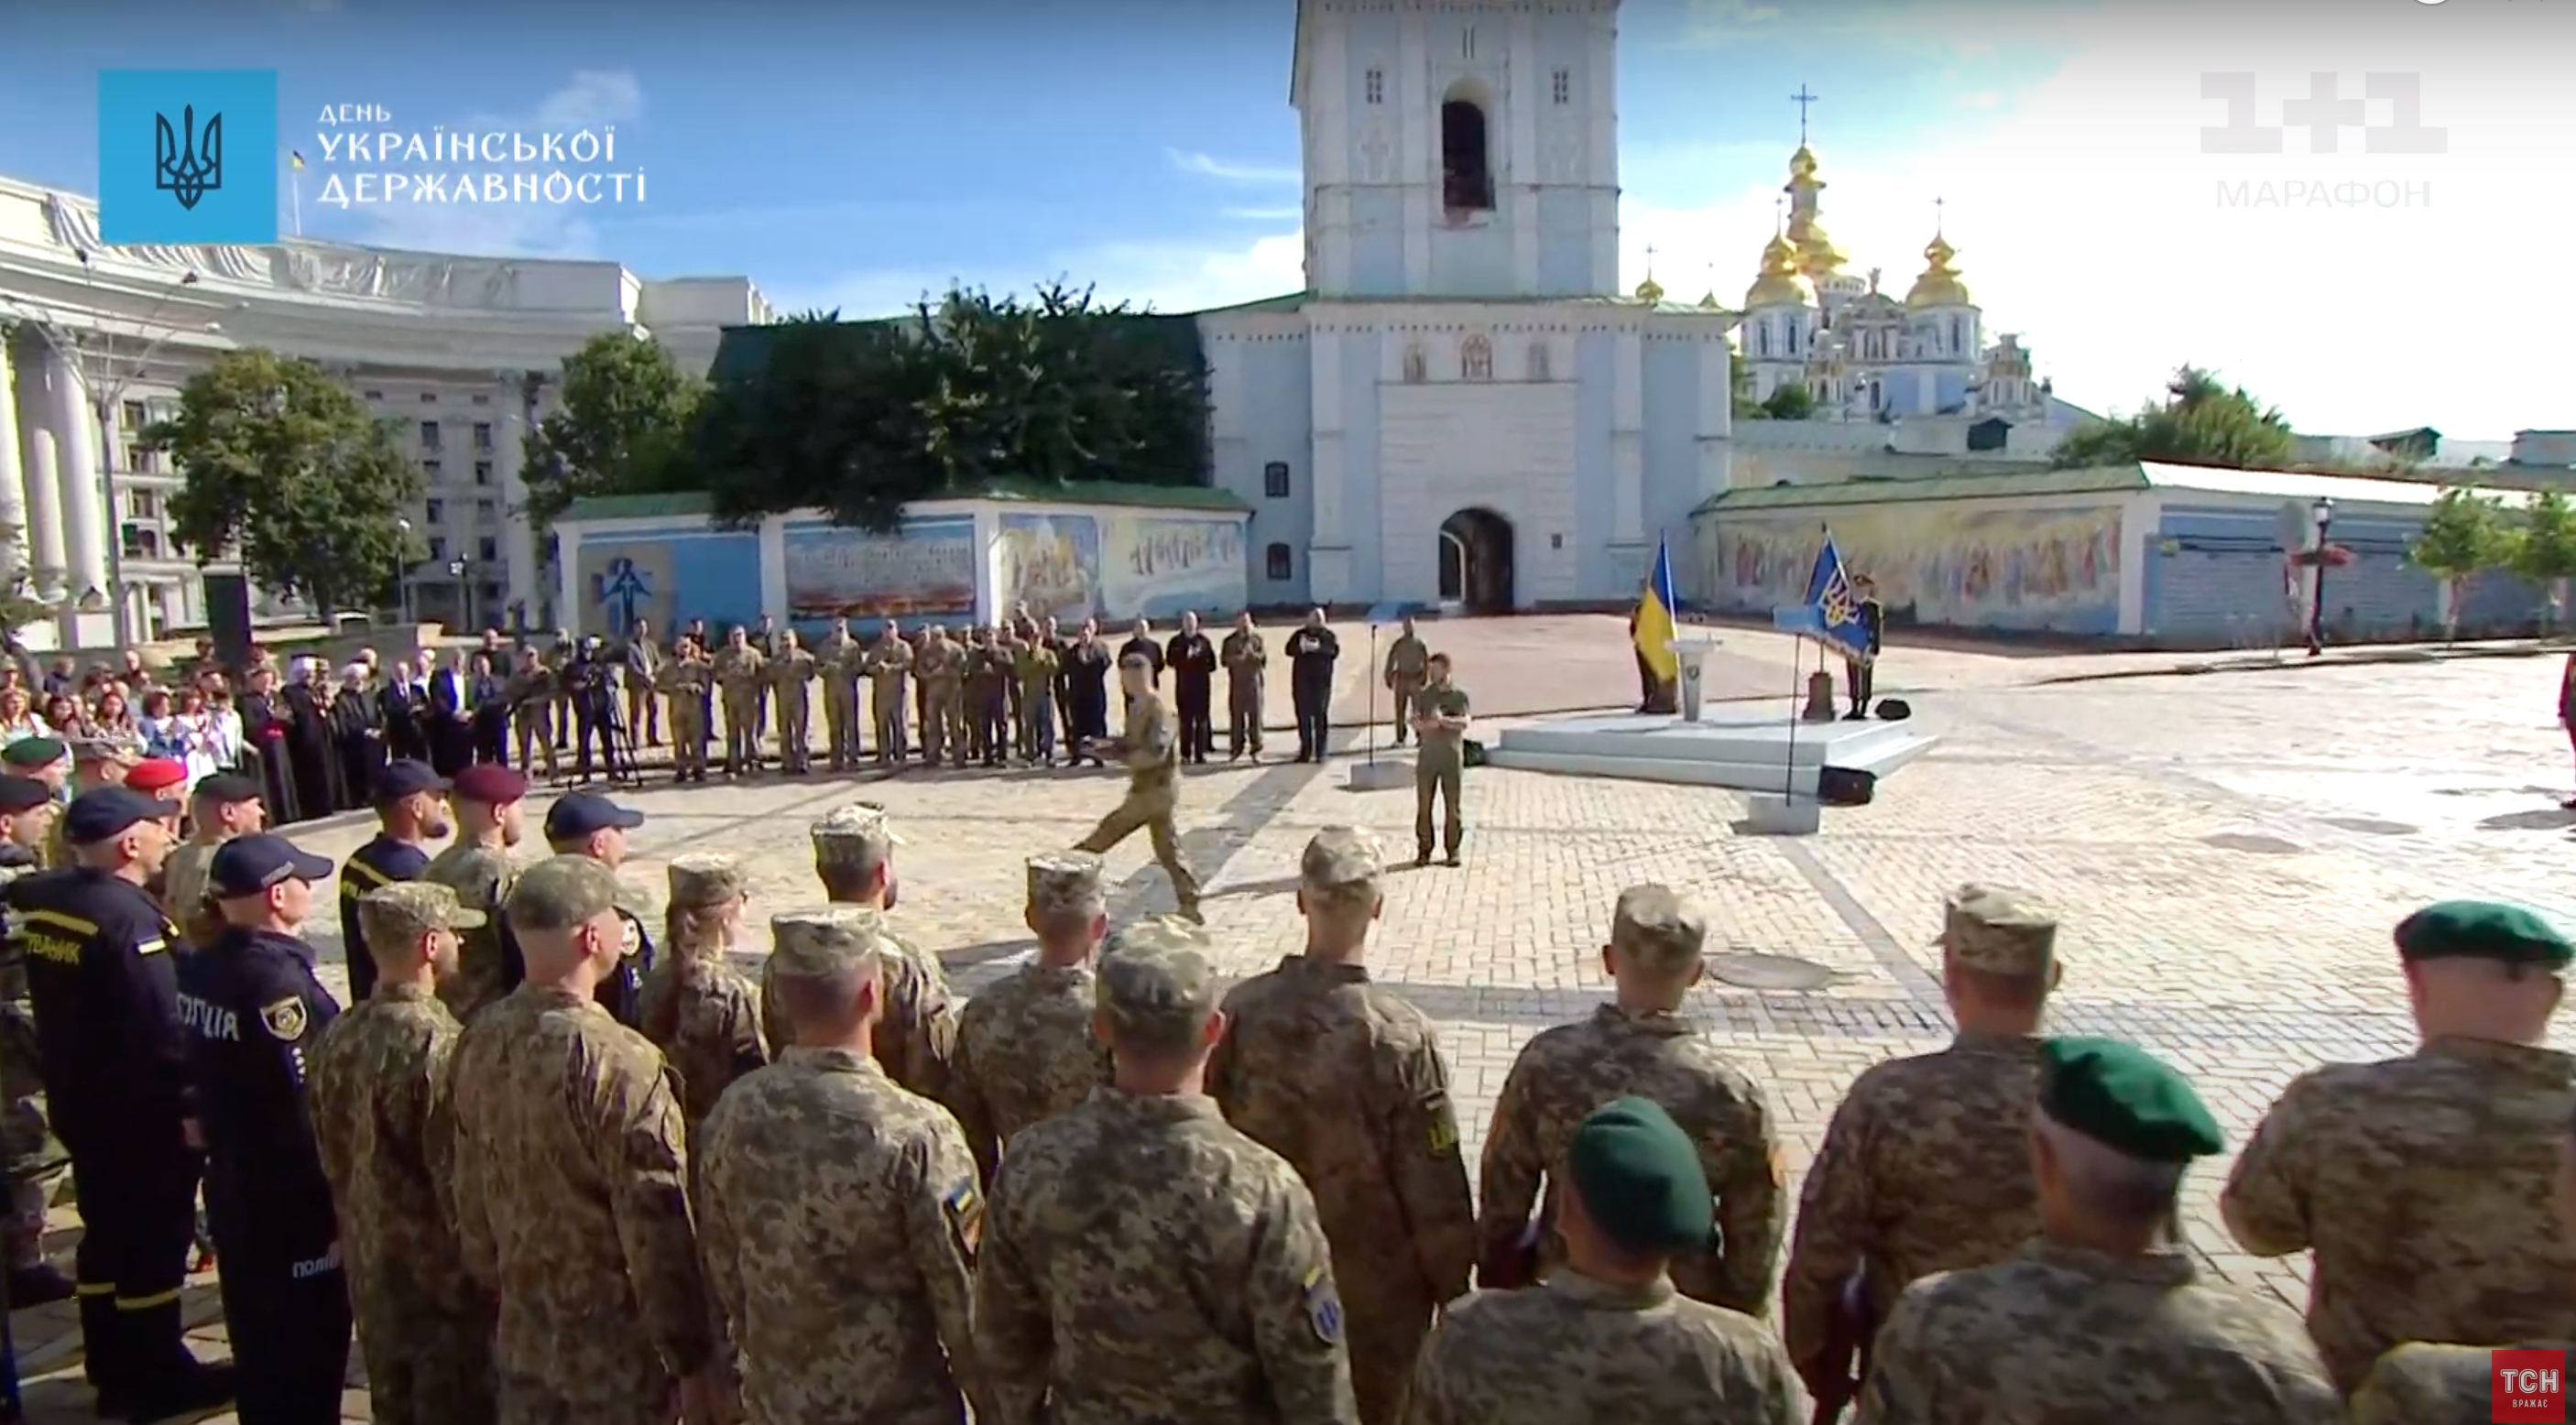 Наприкінці заходу президент вручив нагороди українським військовим.